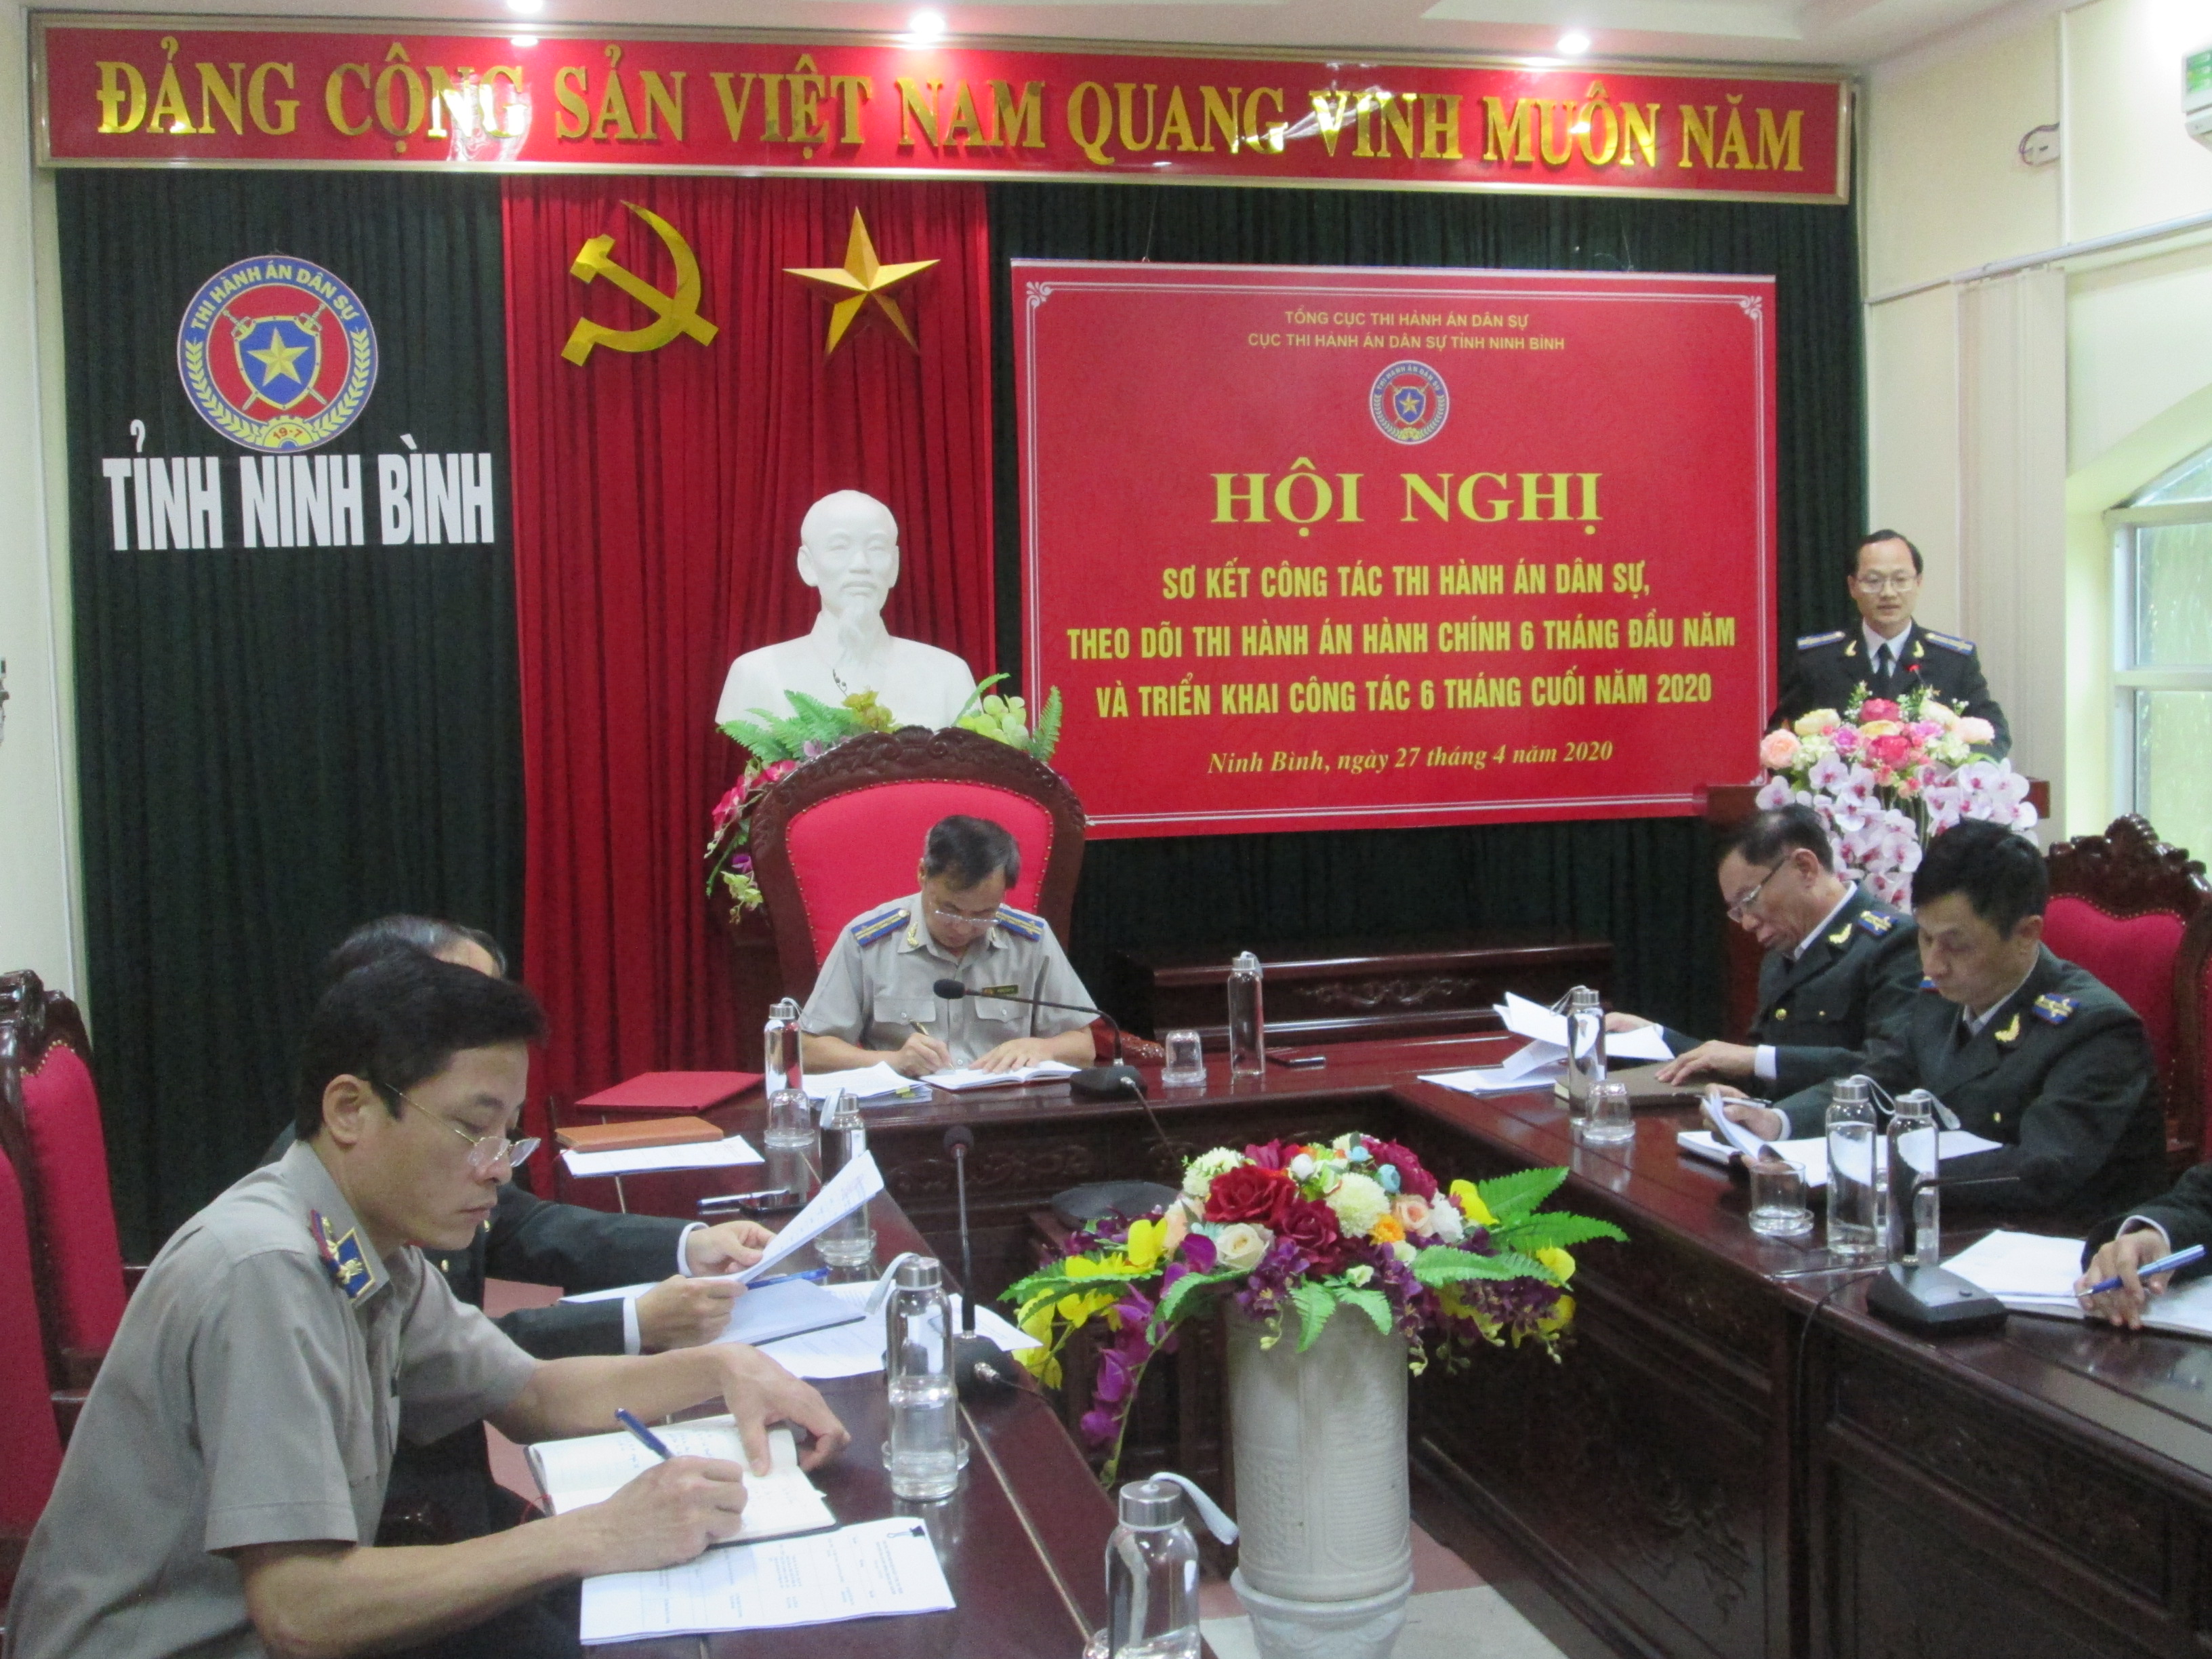 Cục Thi hành án dân sự tỉnh Ninh Bình  tổ chức Hội nghị Giao ban công tác thi hành án dân sự, hành chính 11 tháng năm 2019.